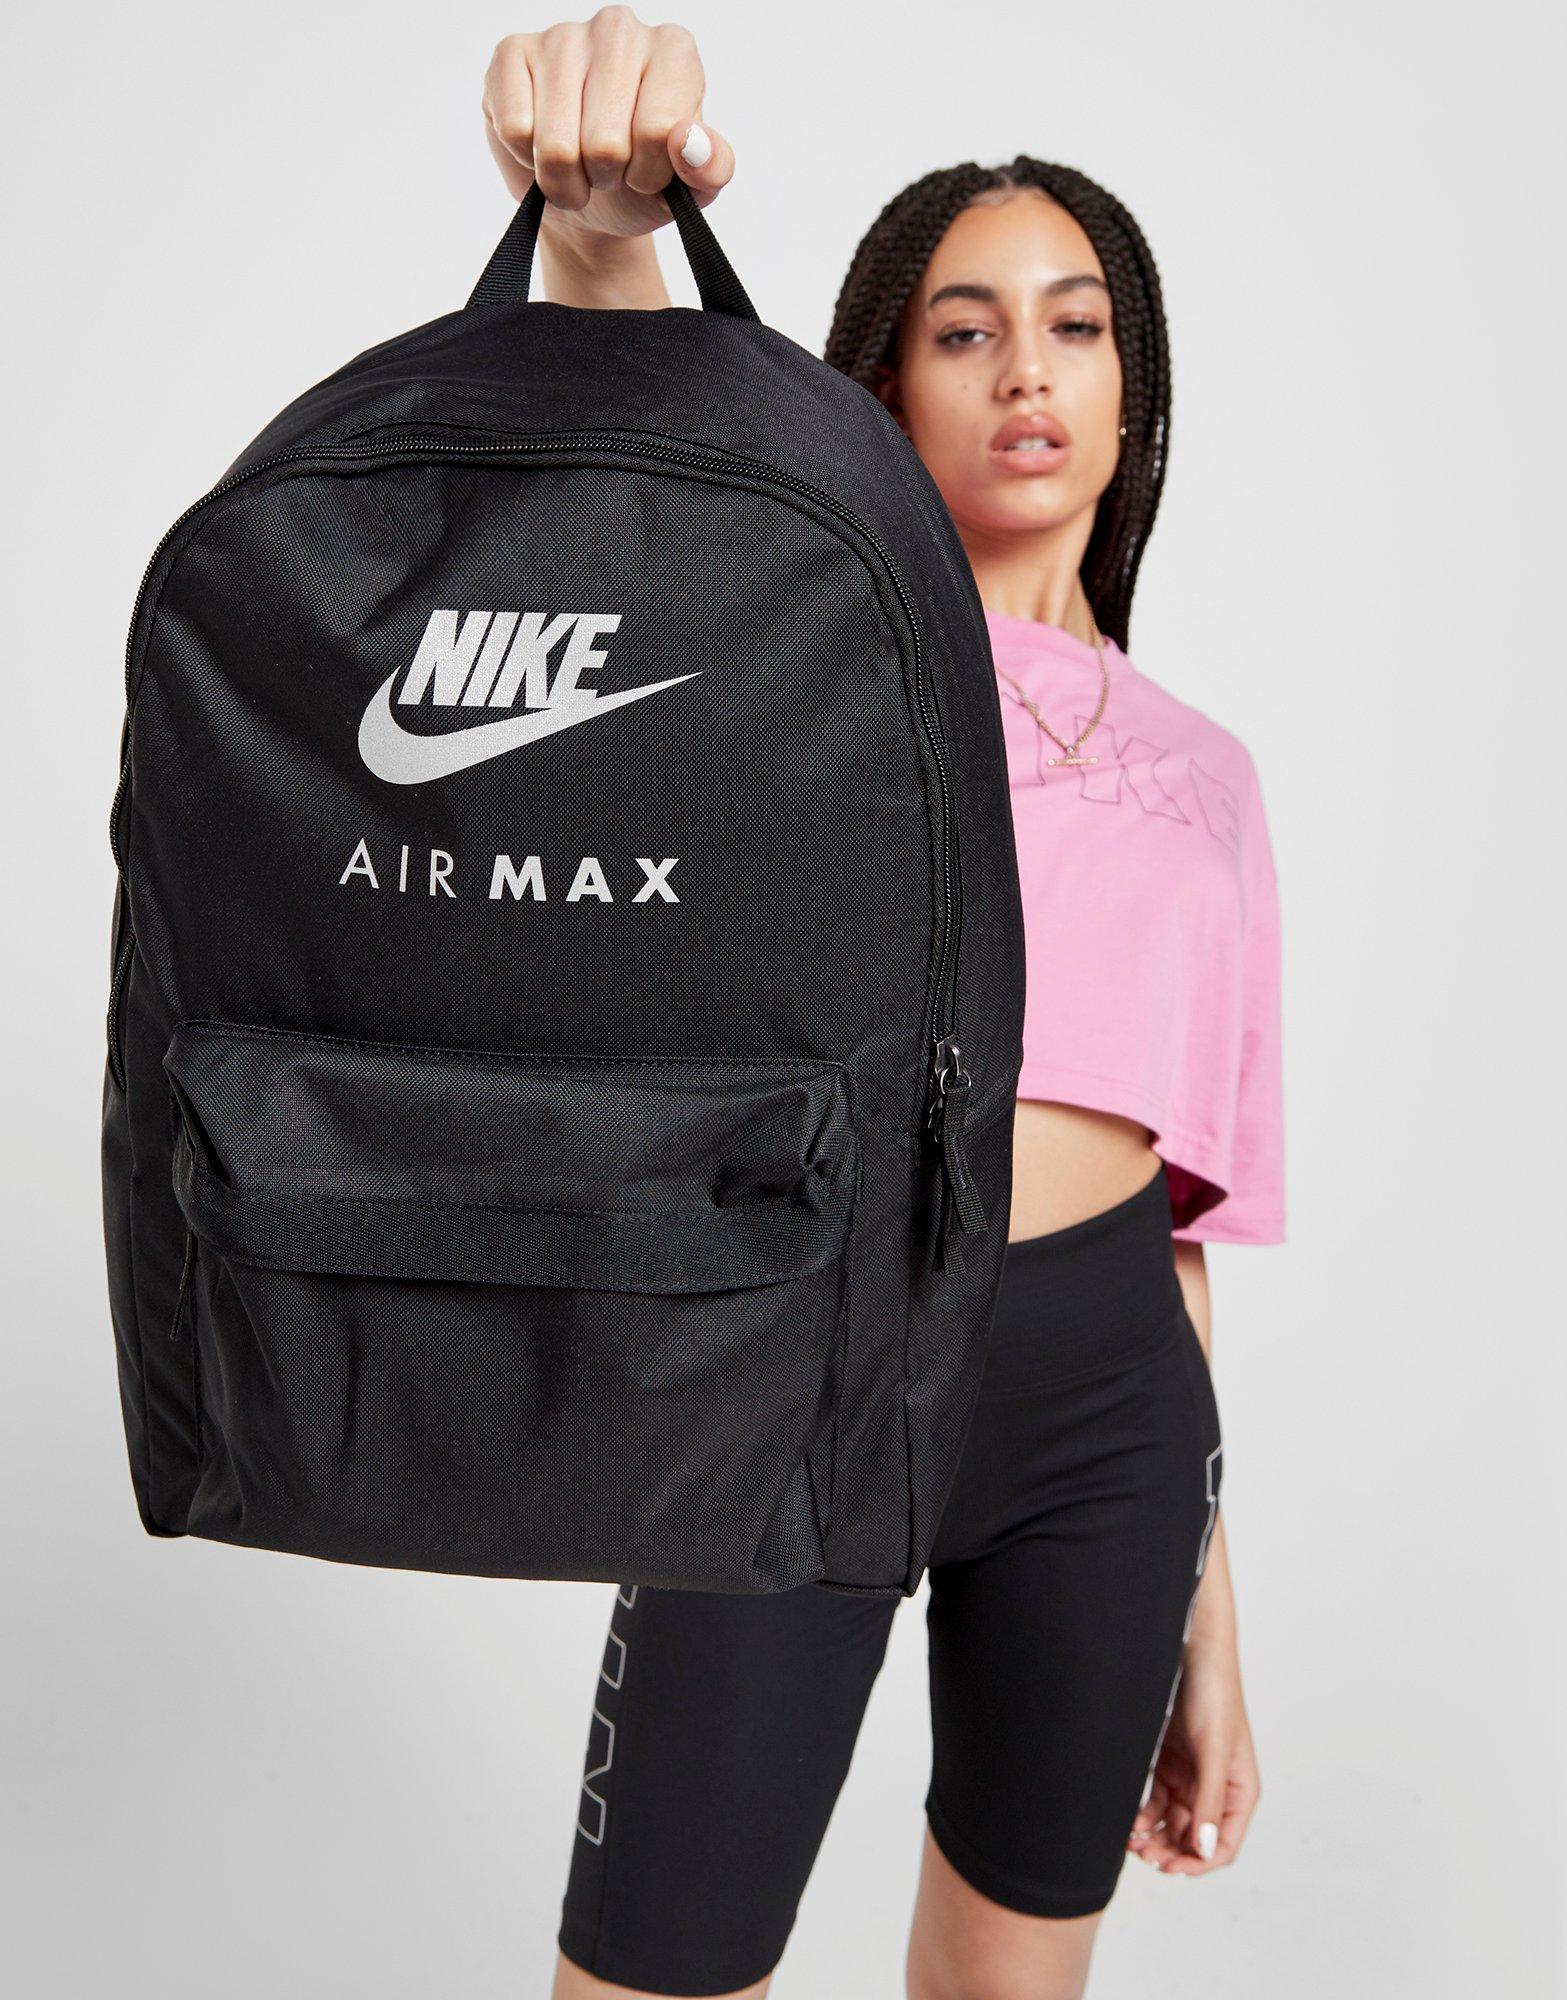 nike air max backpack